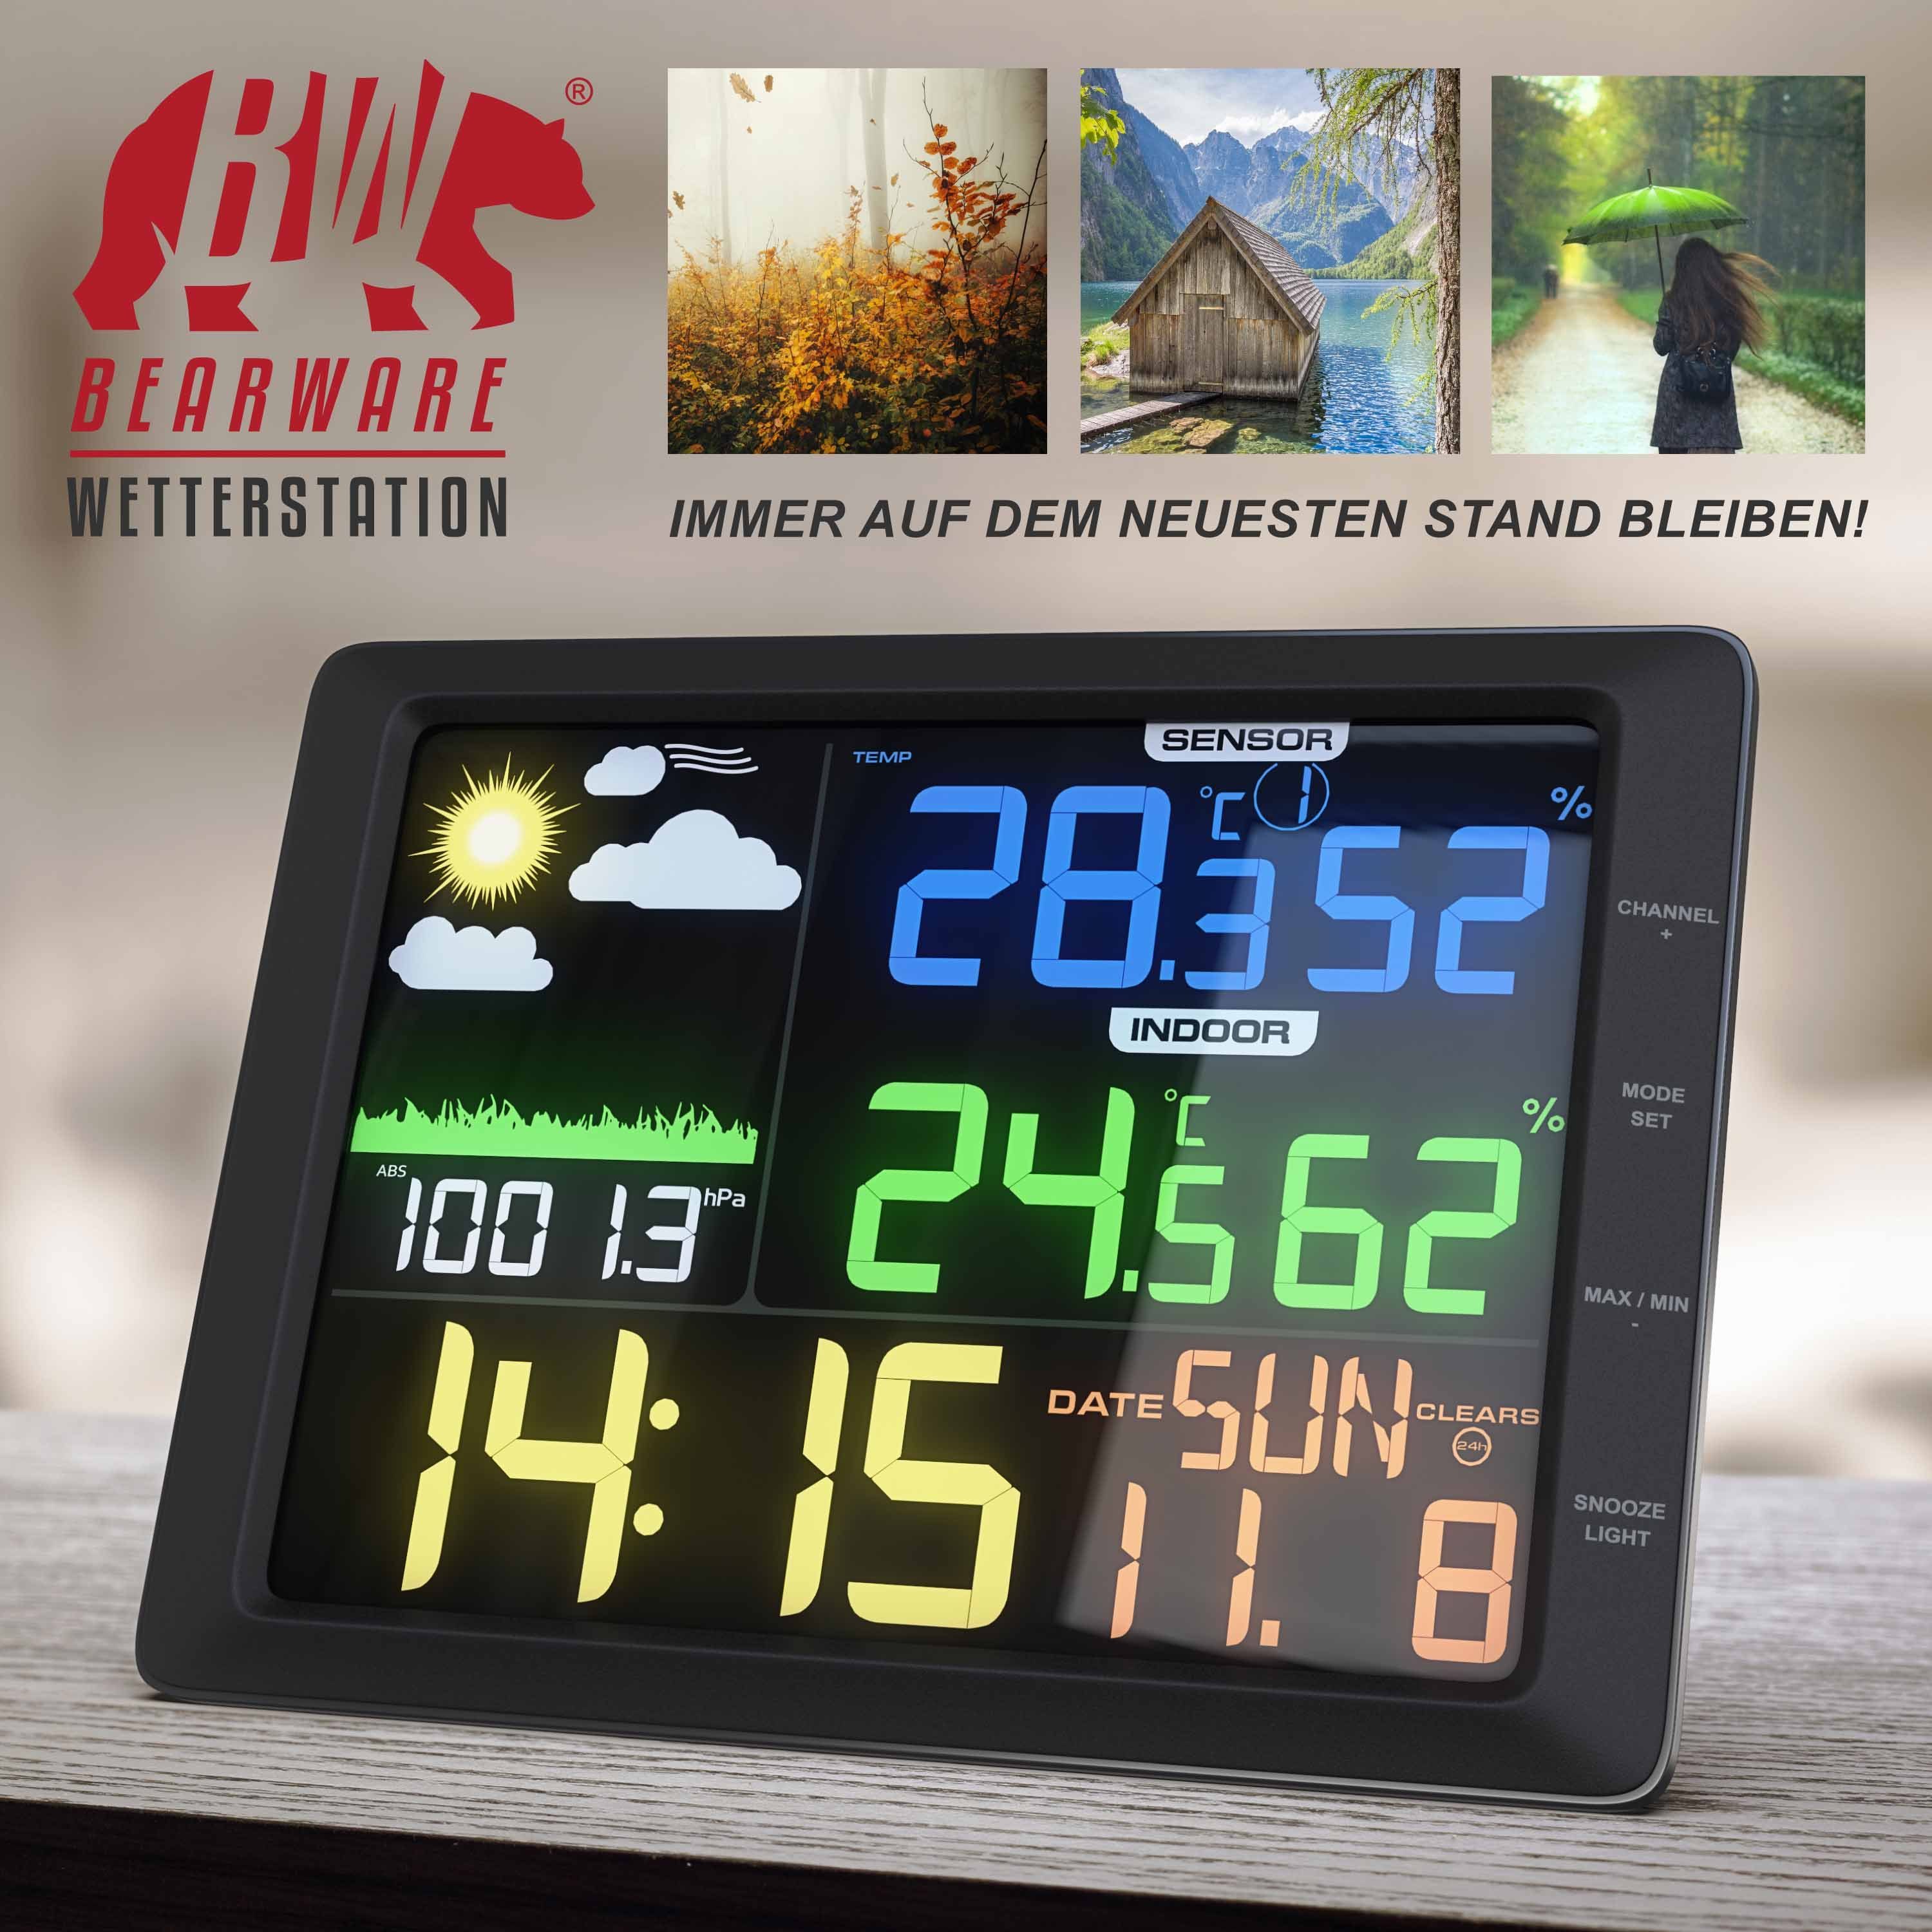 Farbdisplay, LCD Wetterstation Luftdruck, (mit Temperatur uvm) Wettervorhersage, Außensensor, BEARWARE